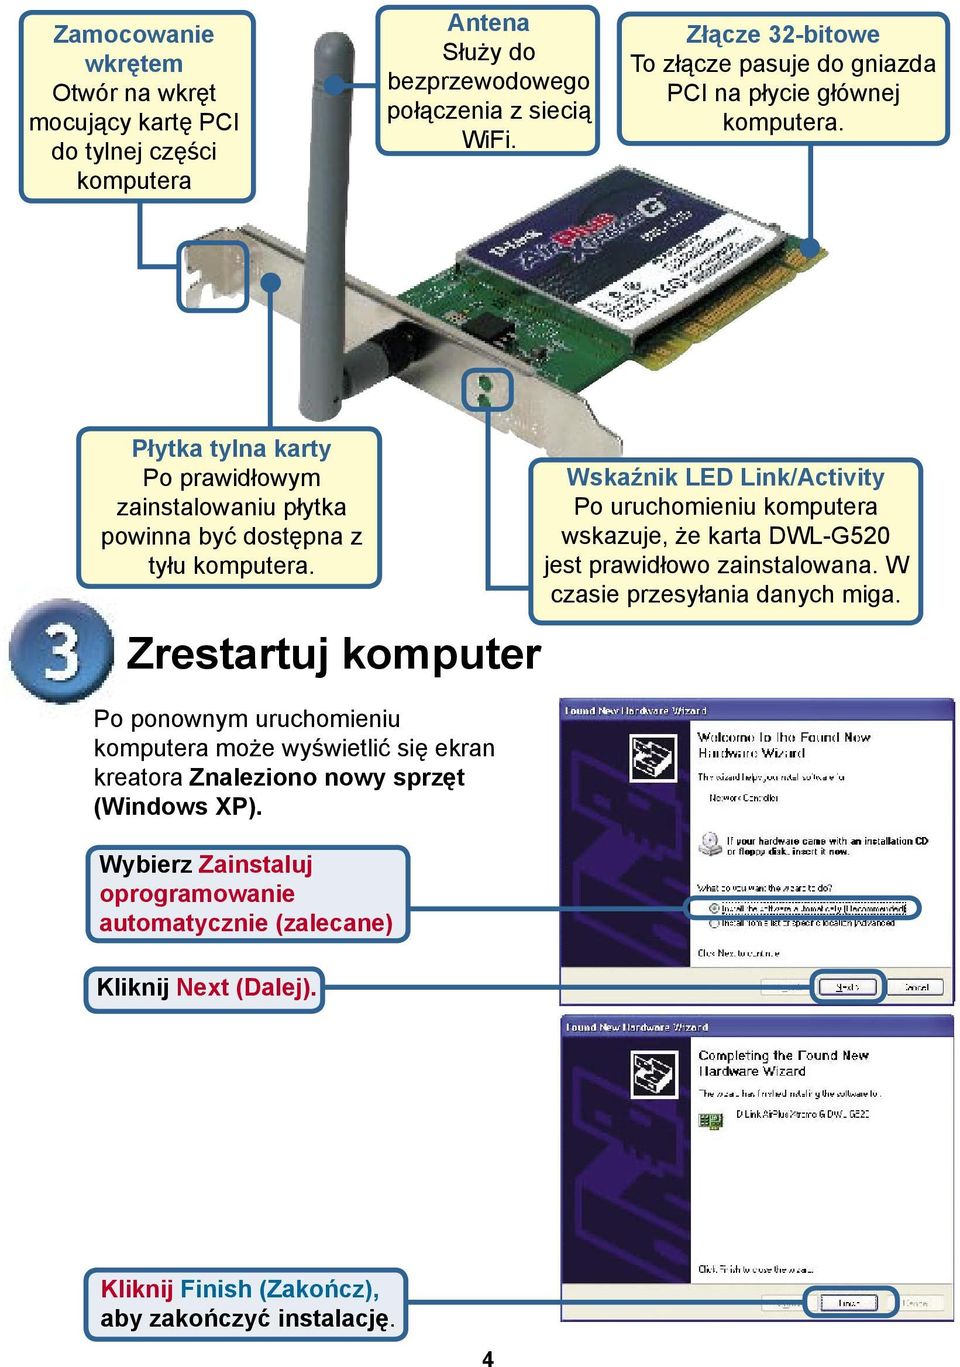 Zrestartuj komputer Po ponownym uruchomieniu komputera może wyświetlić się ekran kreatora Znaleziono nowy sprzęt (Windows XP).